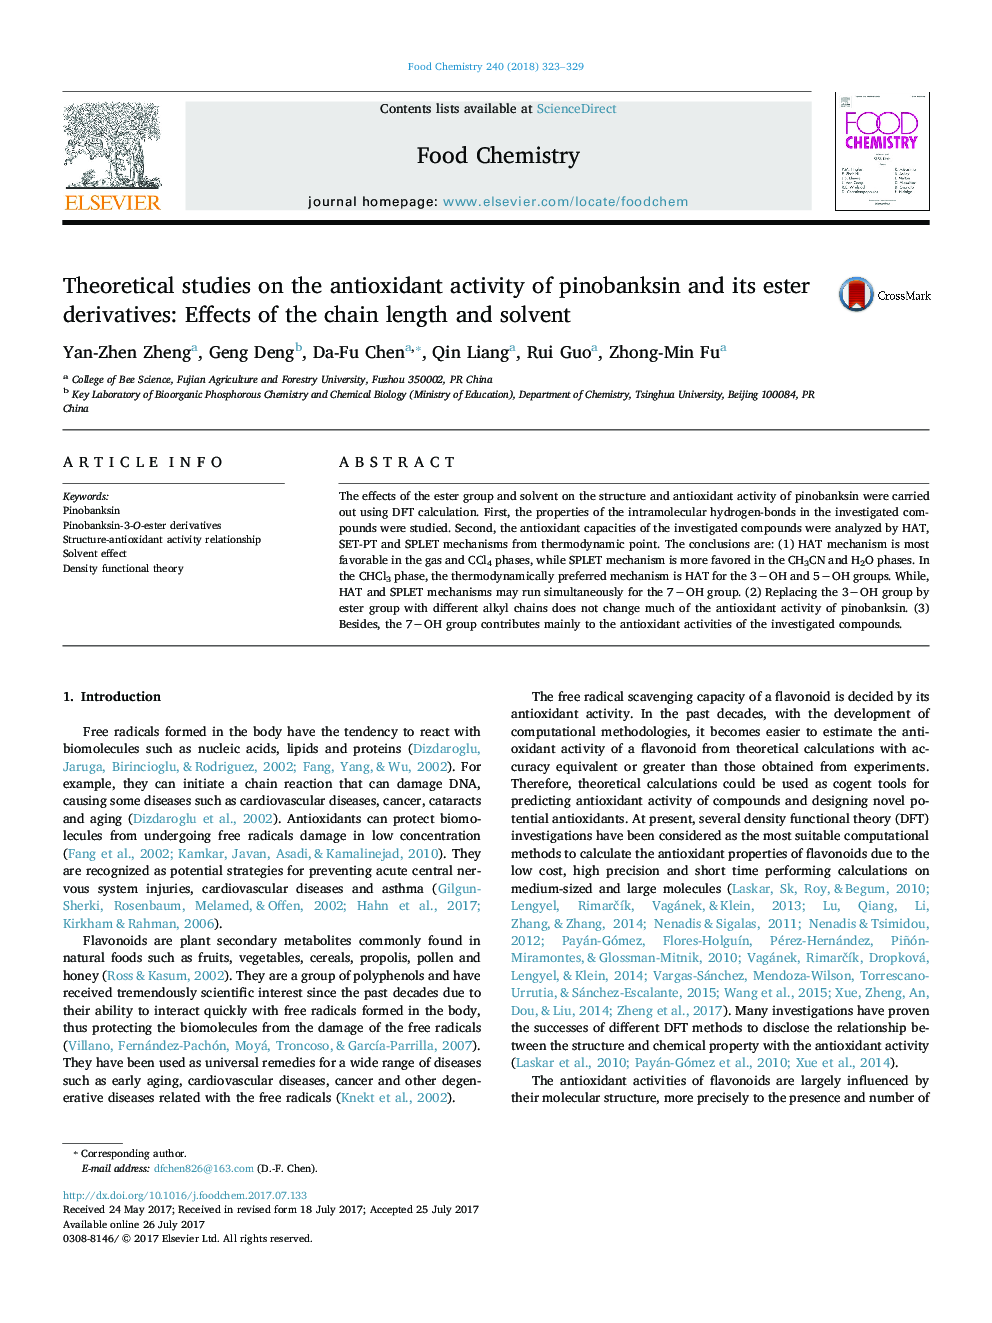 مطالعات نظری بر فعالیت آنتی اکسیدانی پنیبنسین و مشتقات استر آن: اثرات طول زنجیره ای و حلال